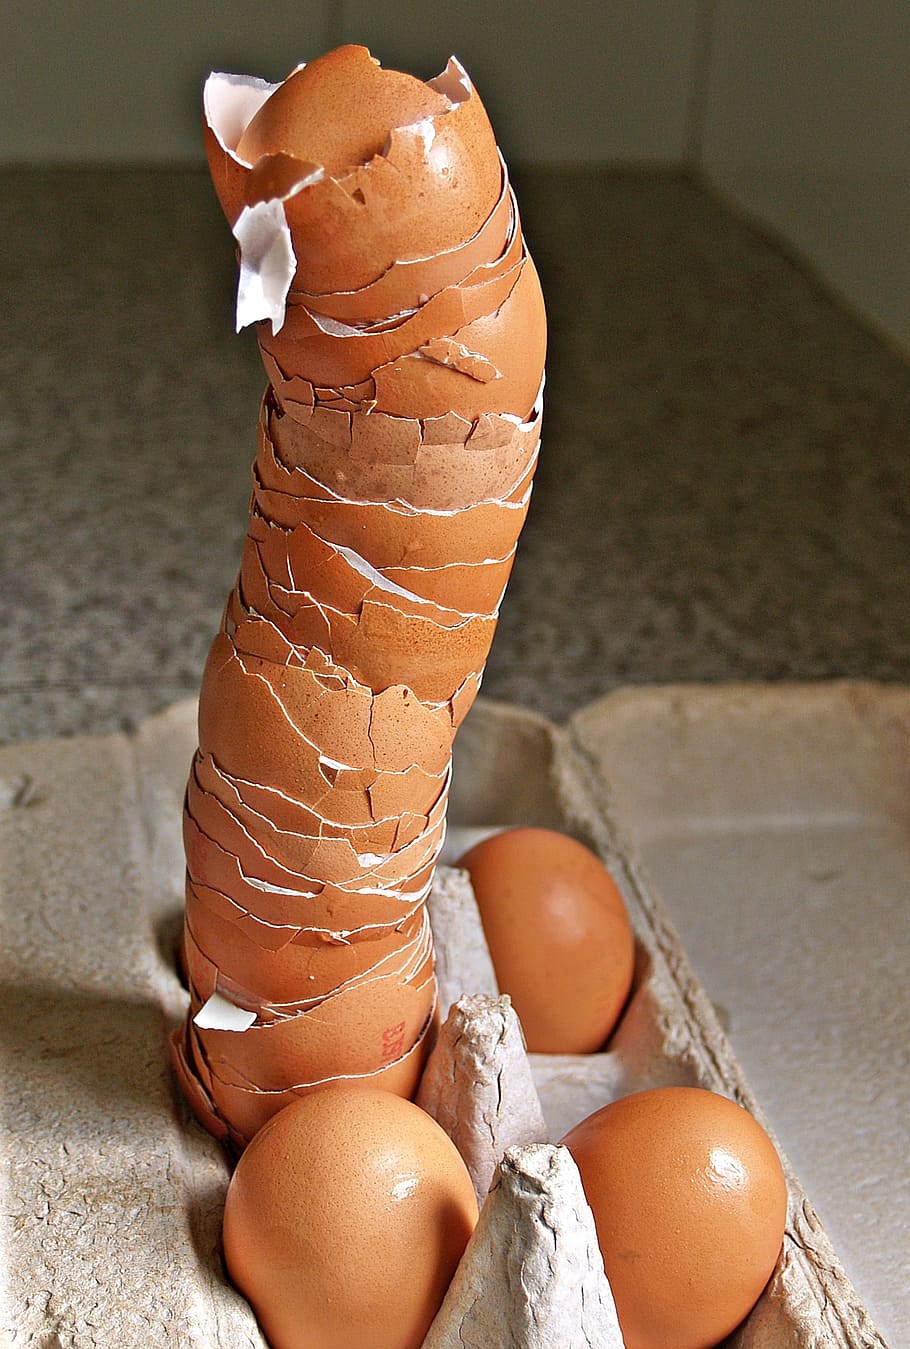 kosong, kulit telur ayam, abu-abu, nampan, kulit telur, tinggi, tumpukan, rusak, telur, karton telur